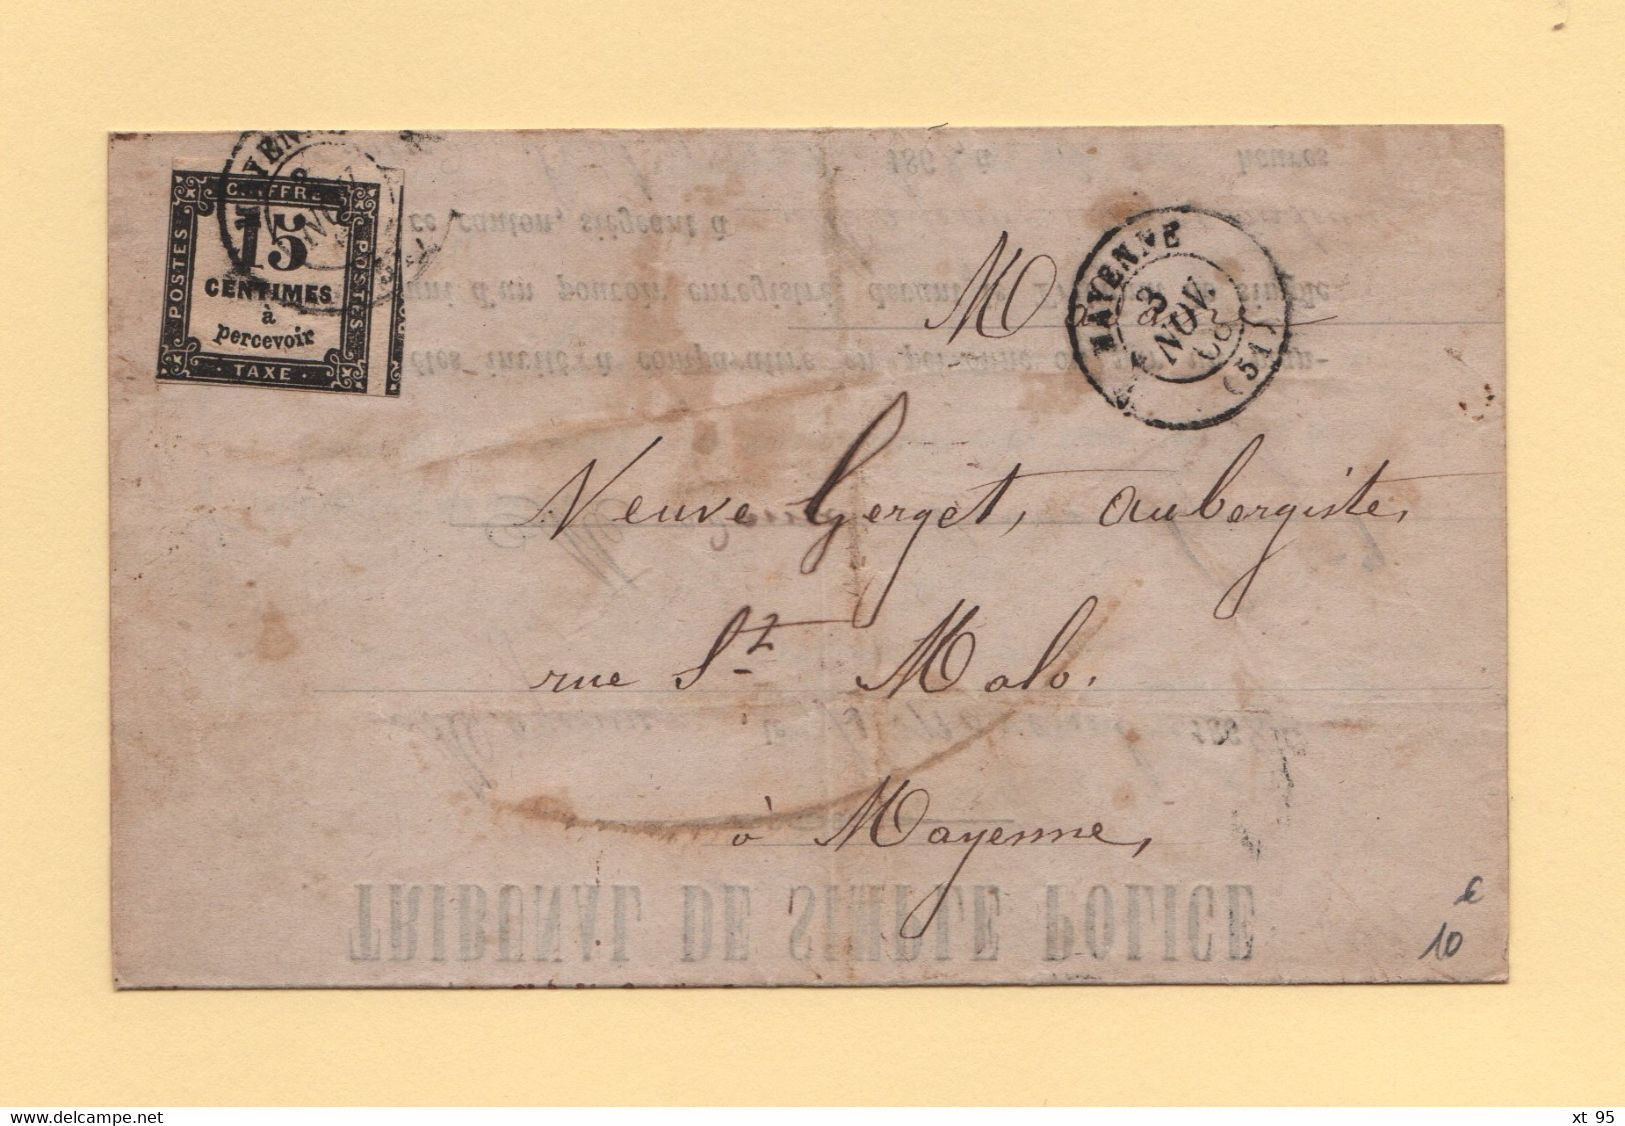 Mayenne - 51 - 3 Nov 1868 - Tribunal De Police - Defaut D Eclairage D Une Voiture - Timbre Taxe - 1859-1959 Lettres & Documents